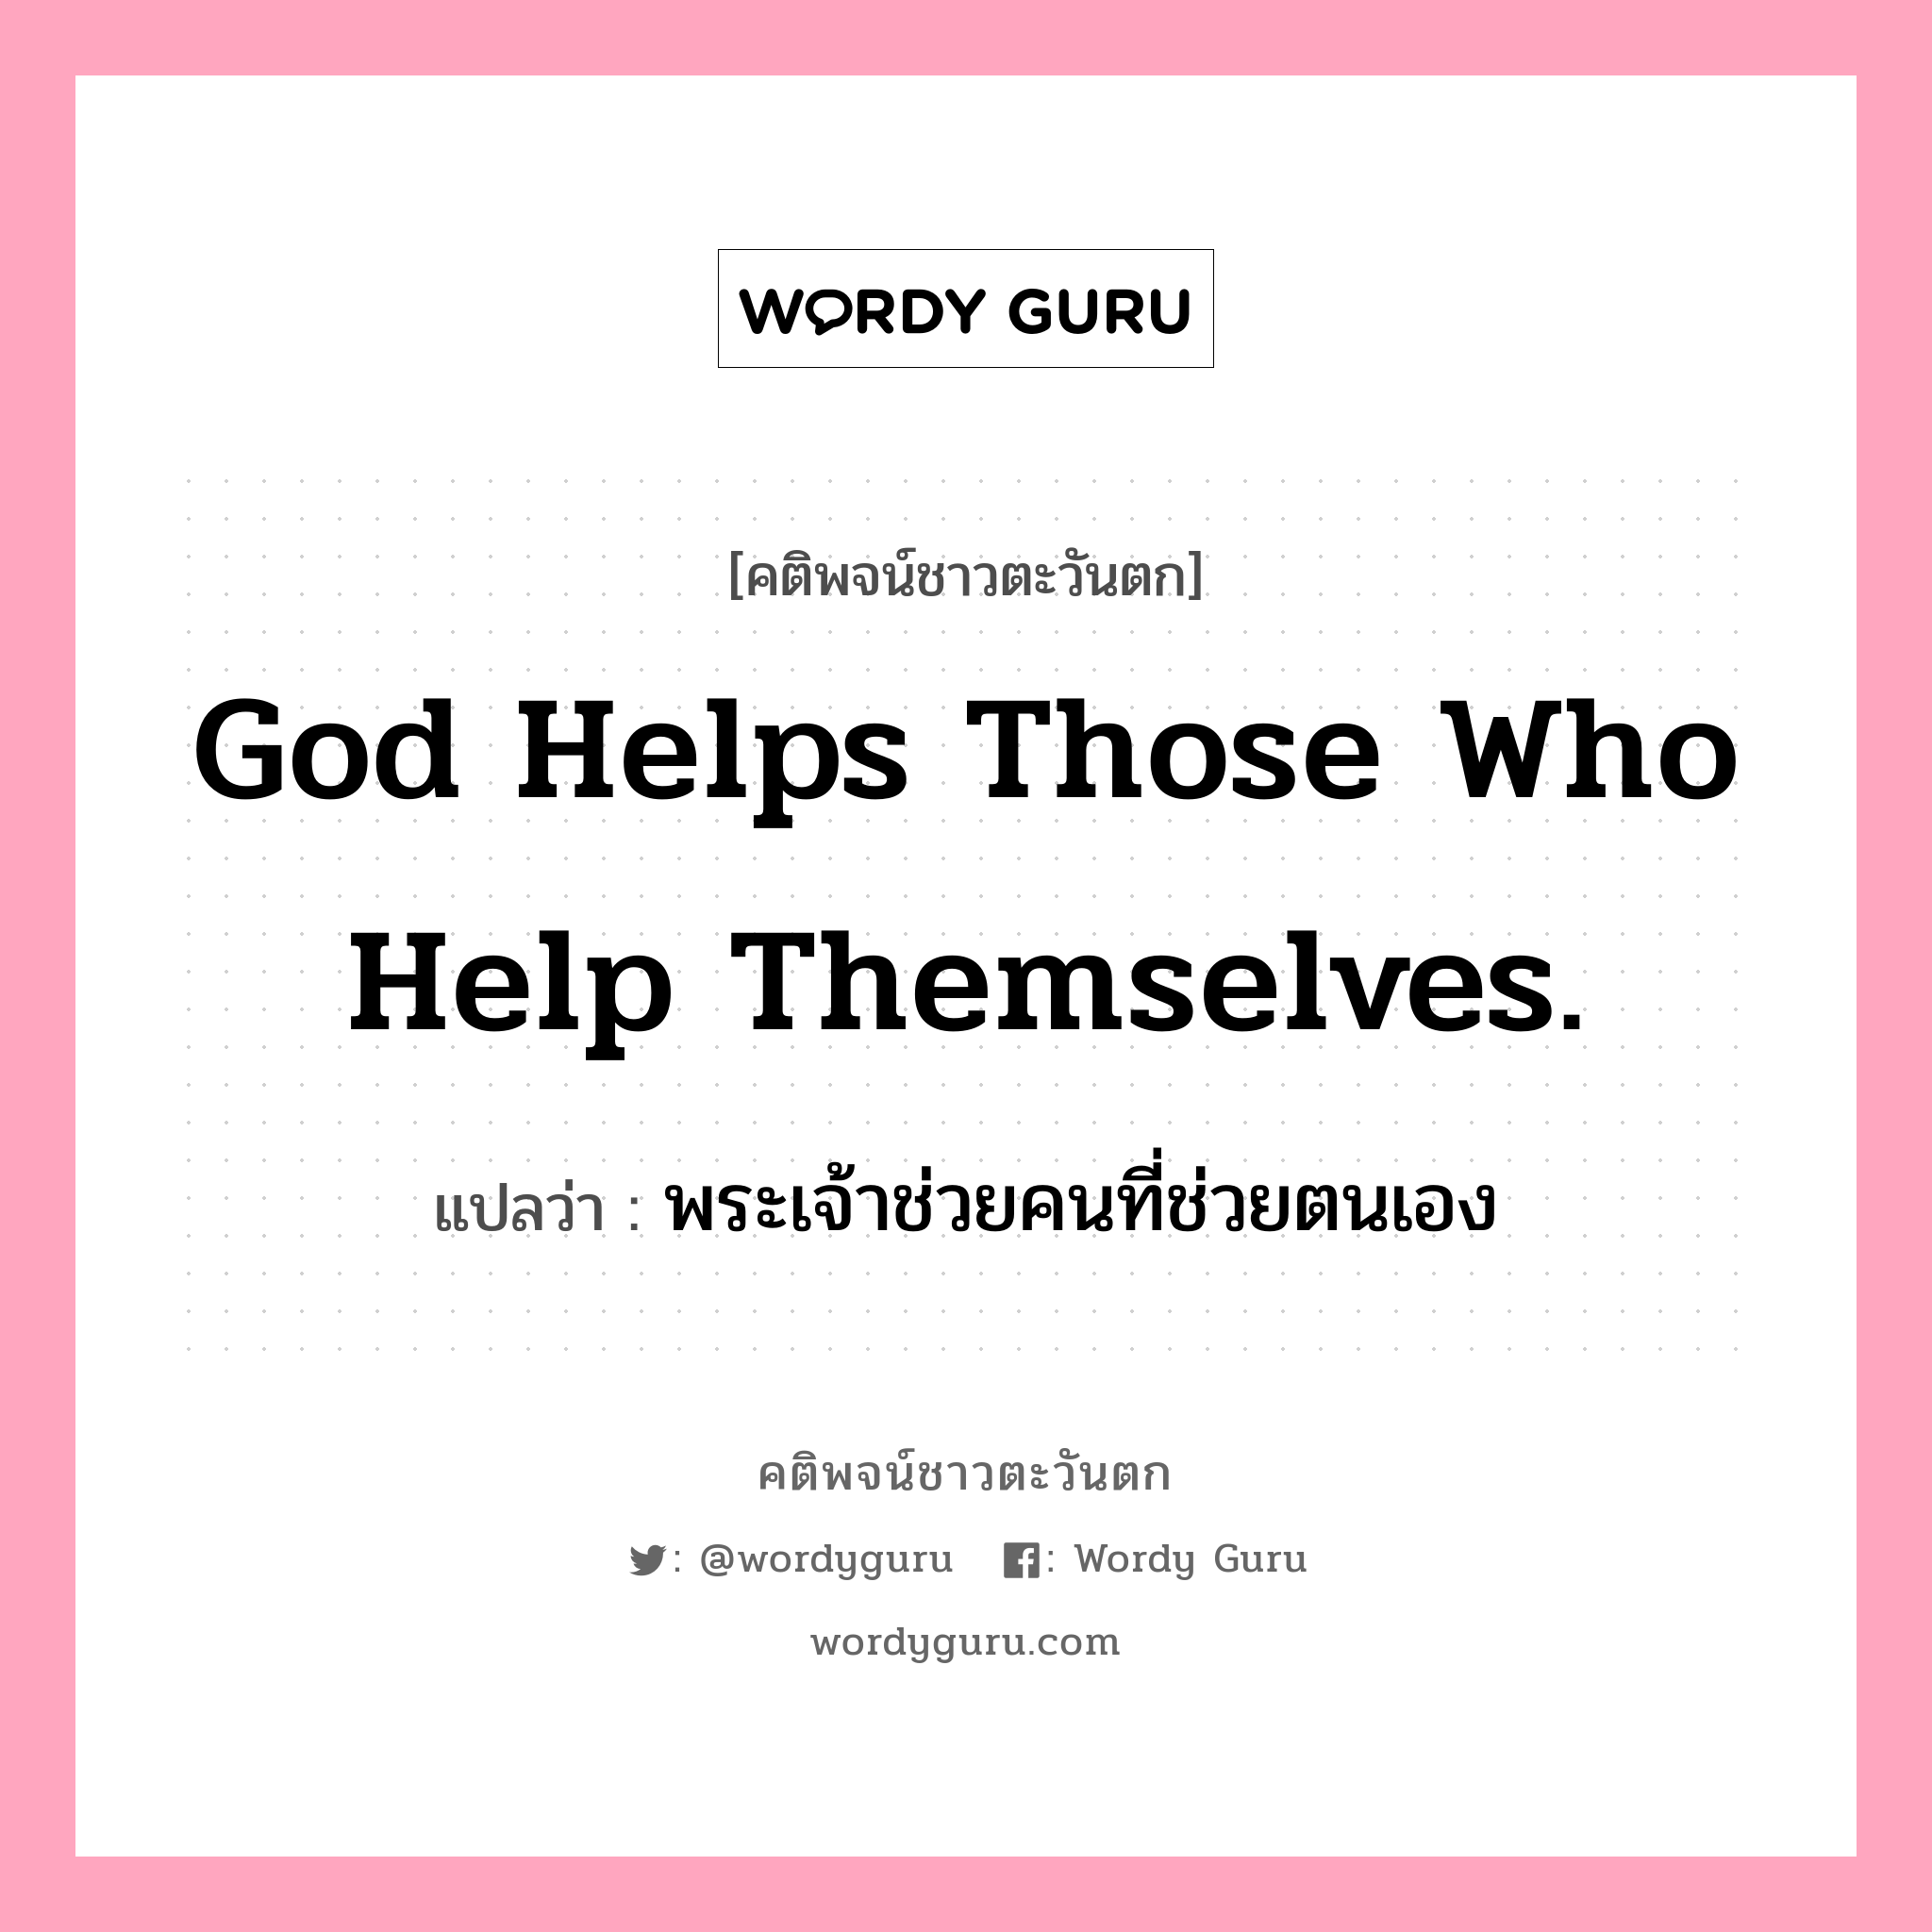 God helps those who help themselves., คติพจน์ชาวตะวันตก God helps those who help themselves. แปลว่า พระเจ้าช่วยคนที่ช่วยตนเอง